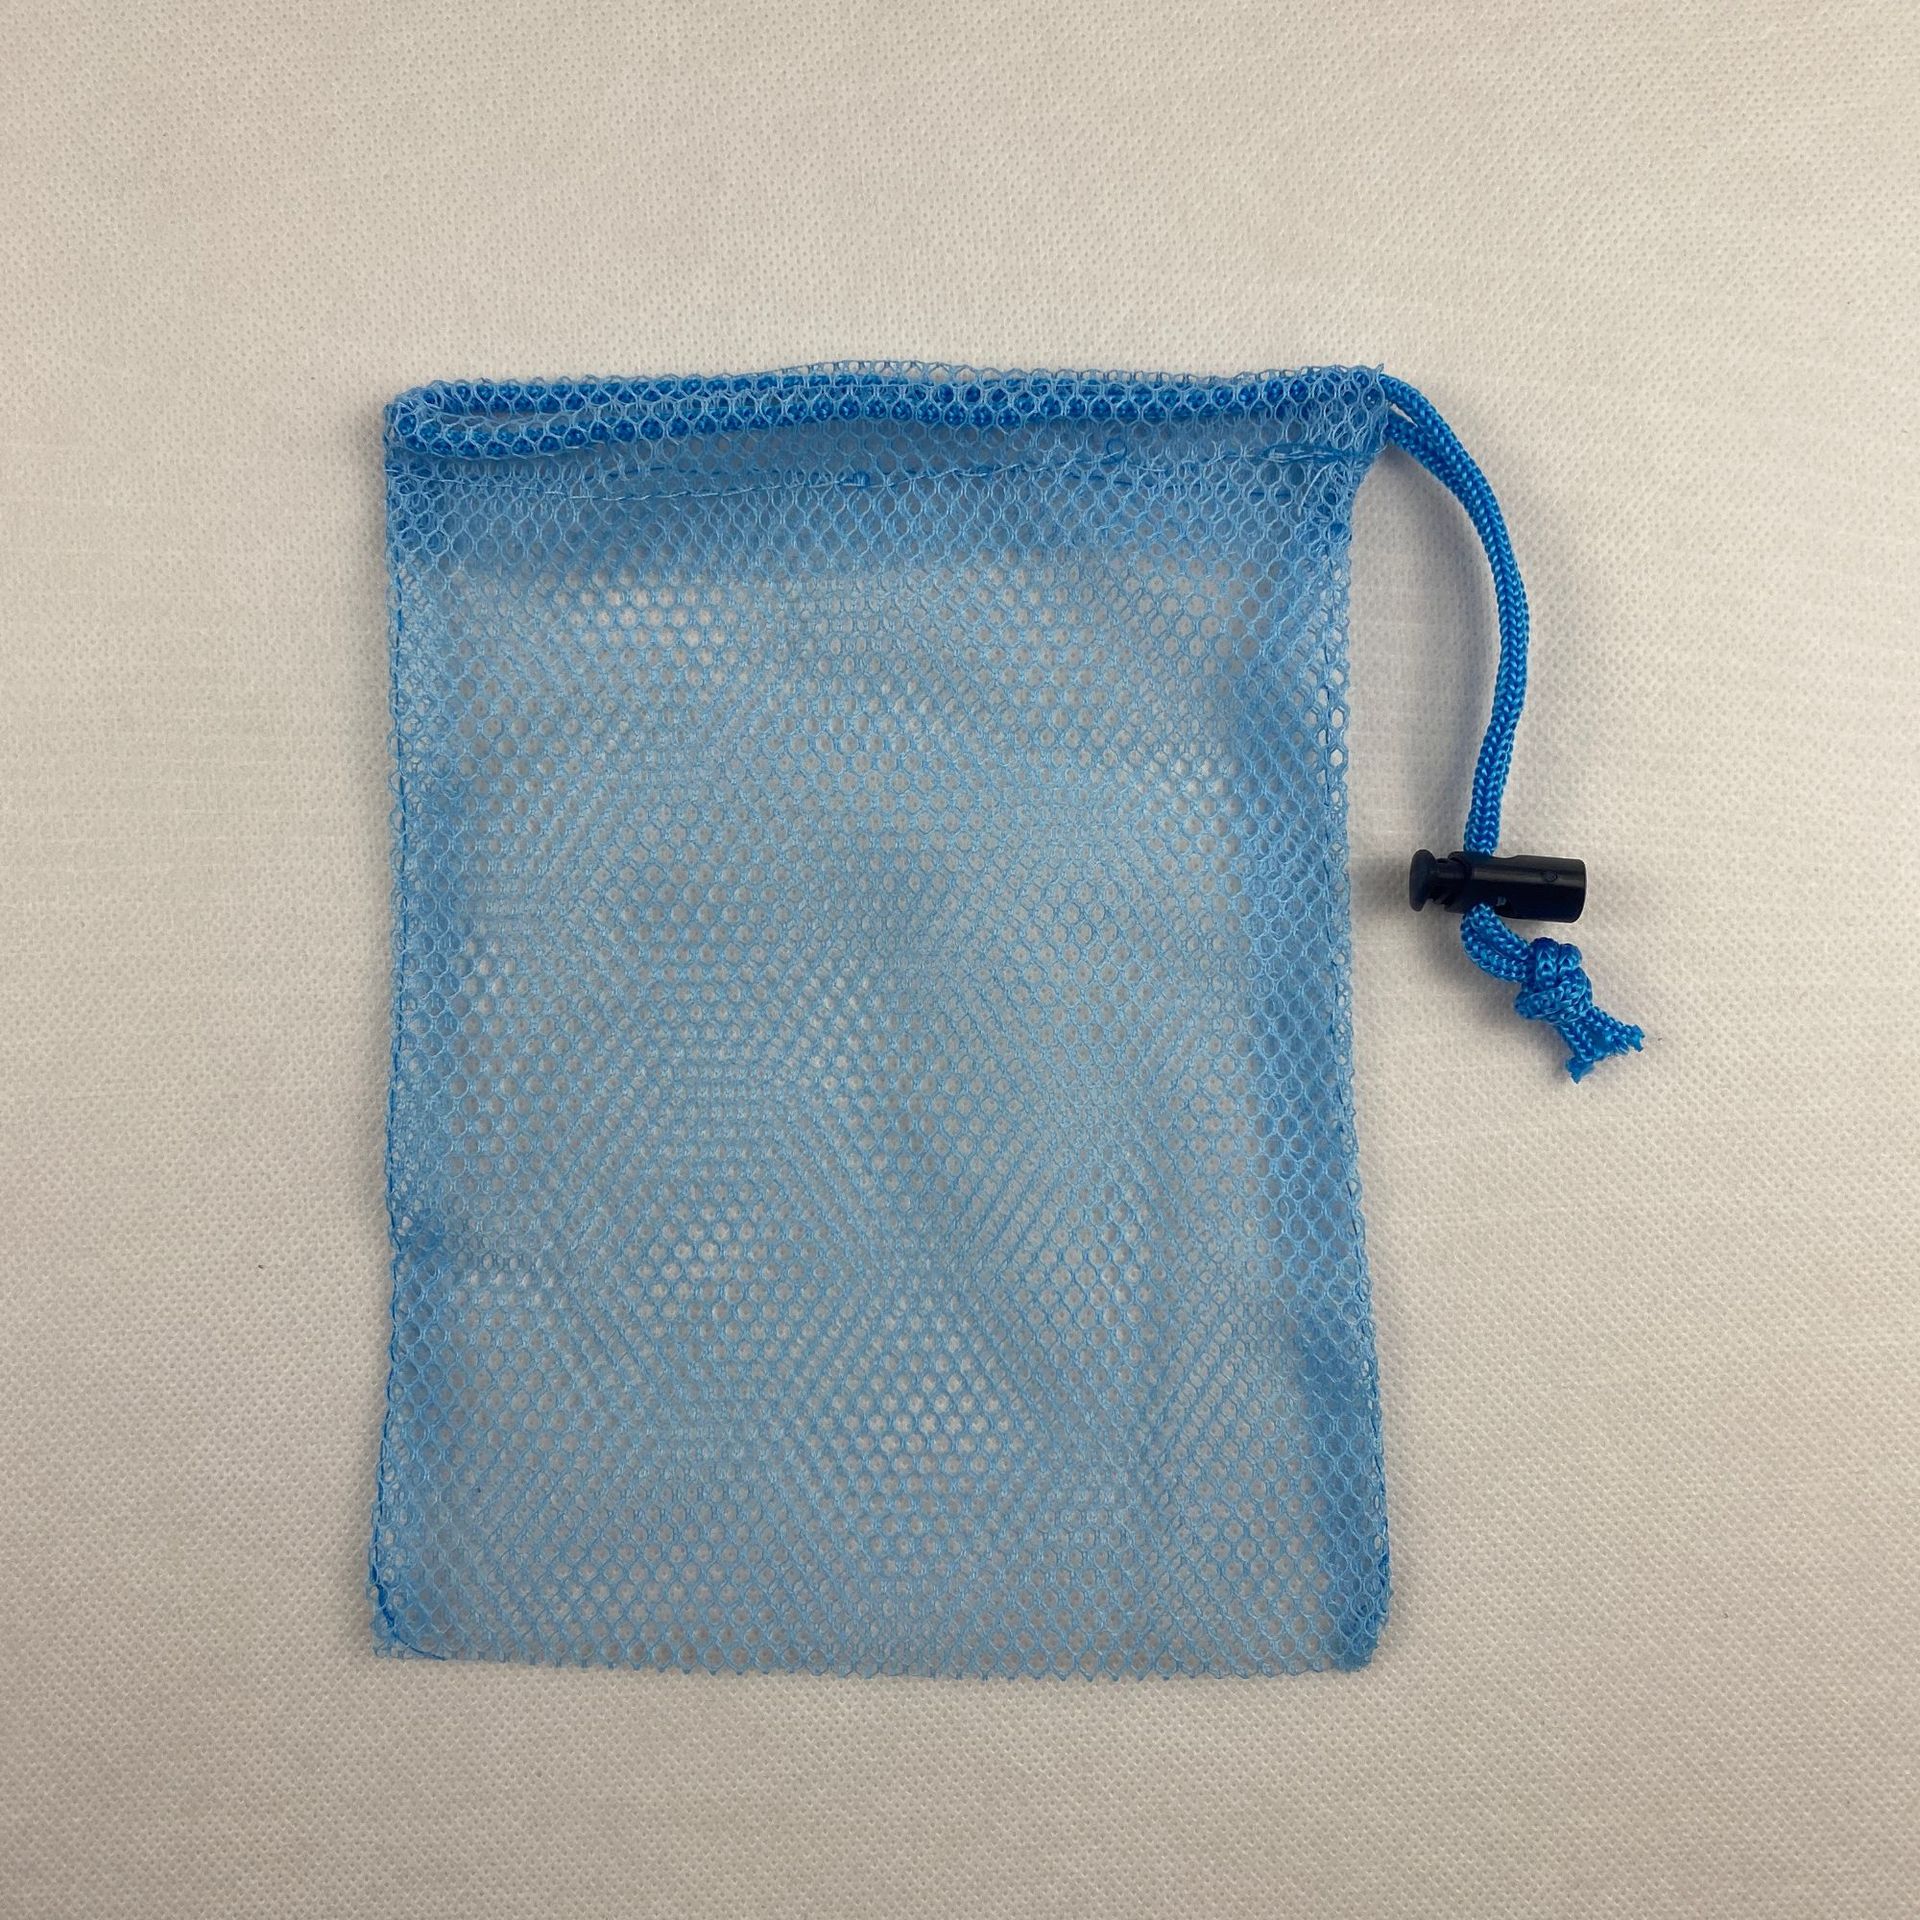 厂家批发蓝色涤纶束口抽绳网眼袋玩具球类收纳包装拉绳网布袋子